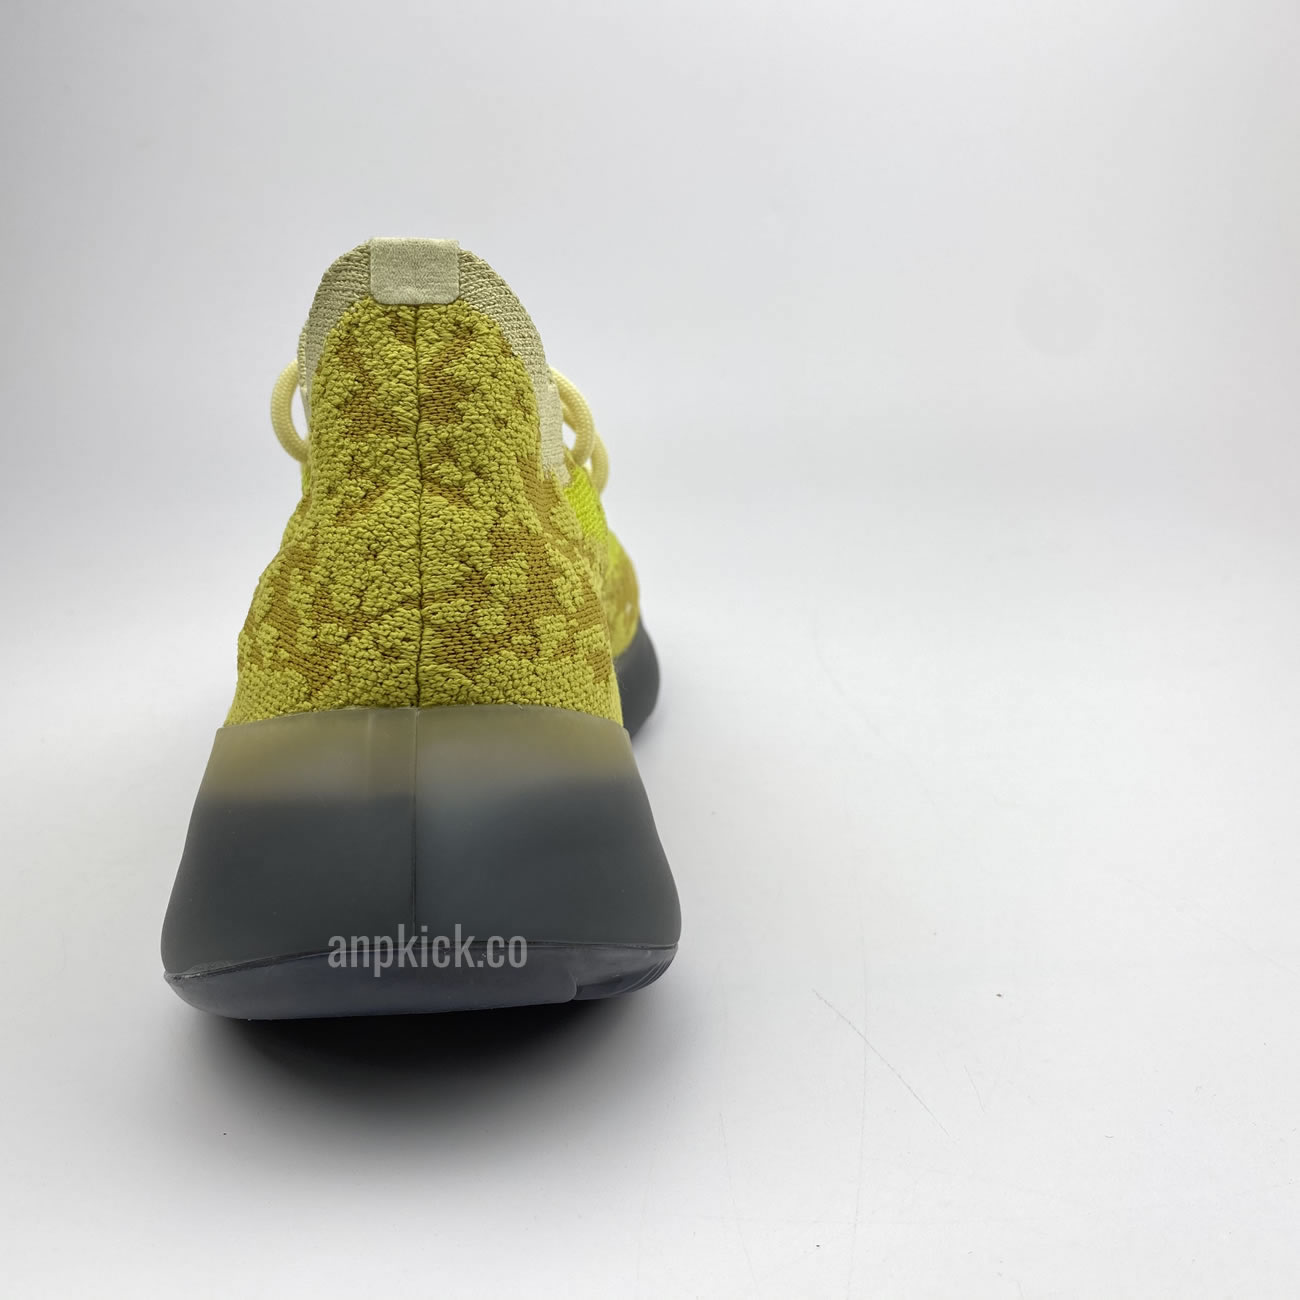 Adidas Yeezy Boost 380 Hylte Fz4990 New Release Date (4) - newkick.org